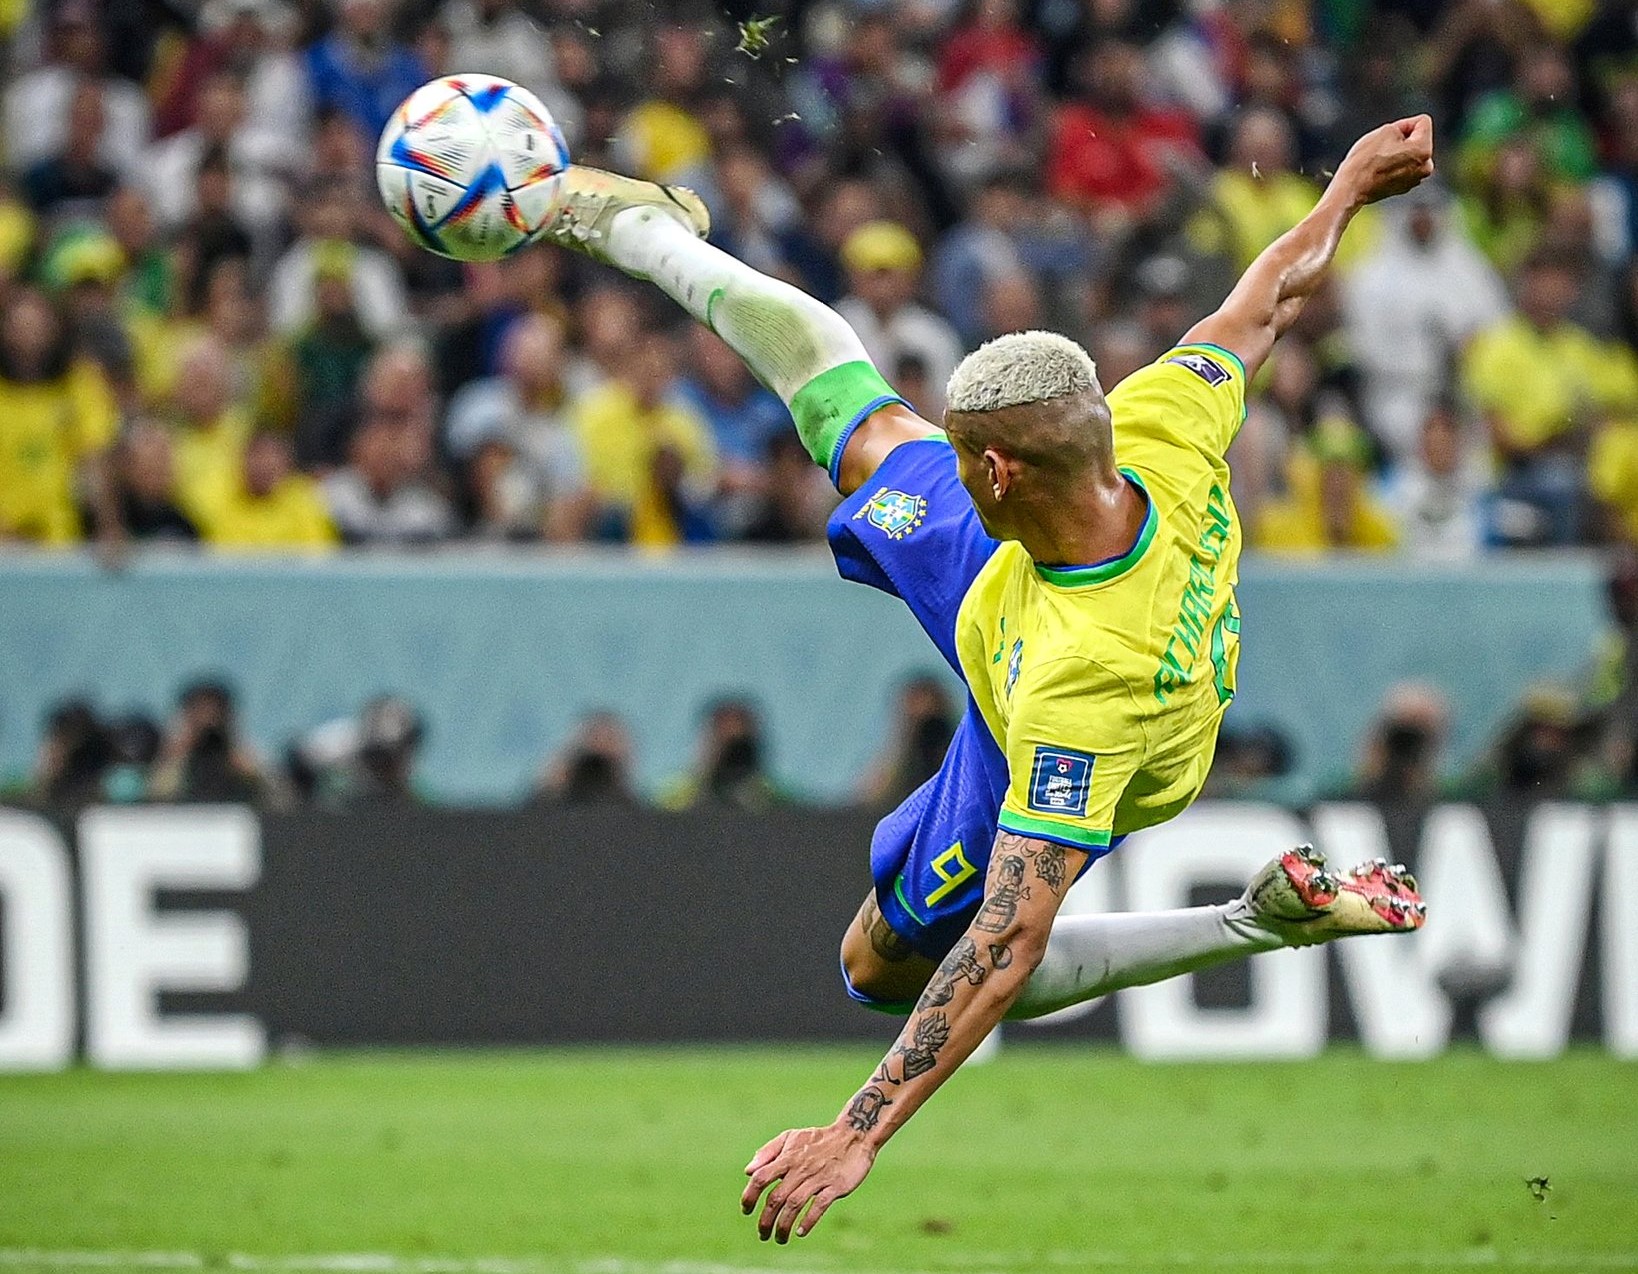 Reviravolta: torcedores acompanham jogo do Brasil com memes